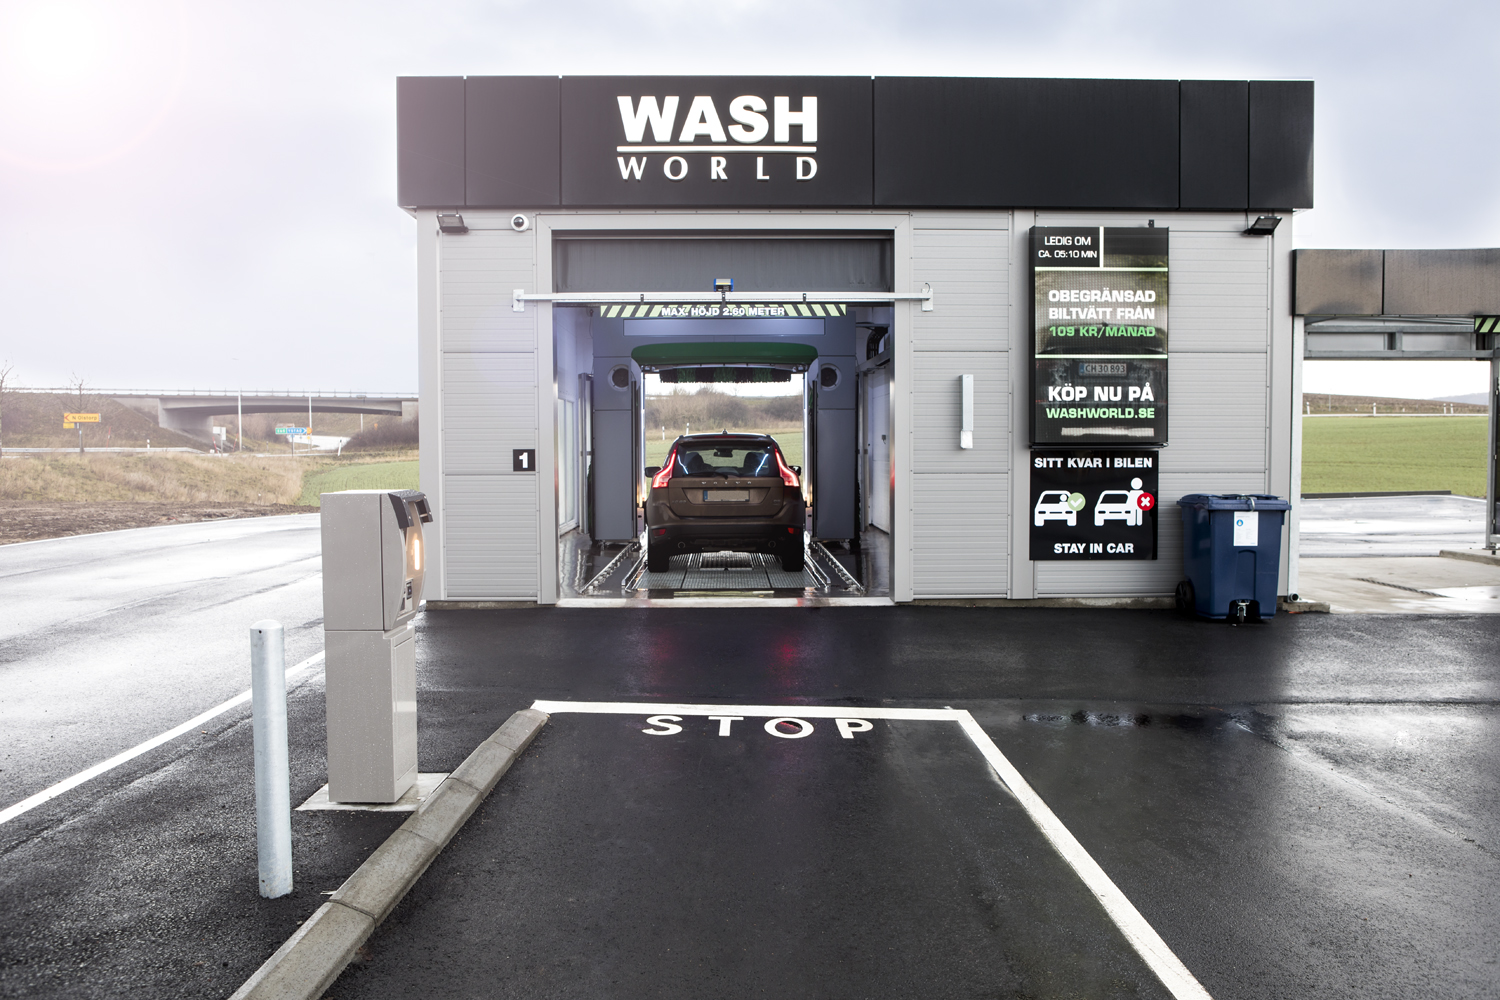 Wash World expanderar med nya högteknologiska biltvättar i Sverige